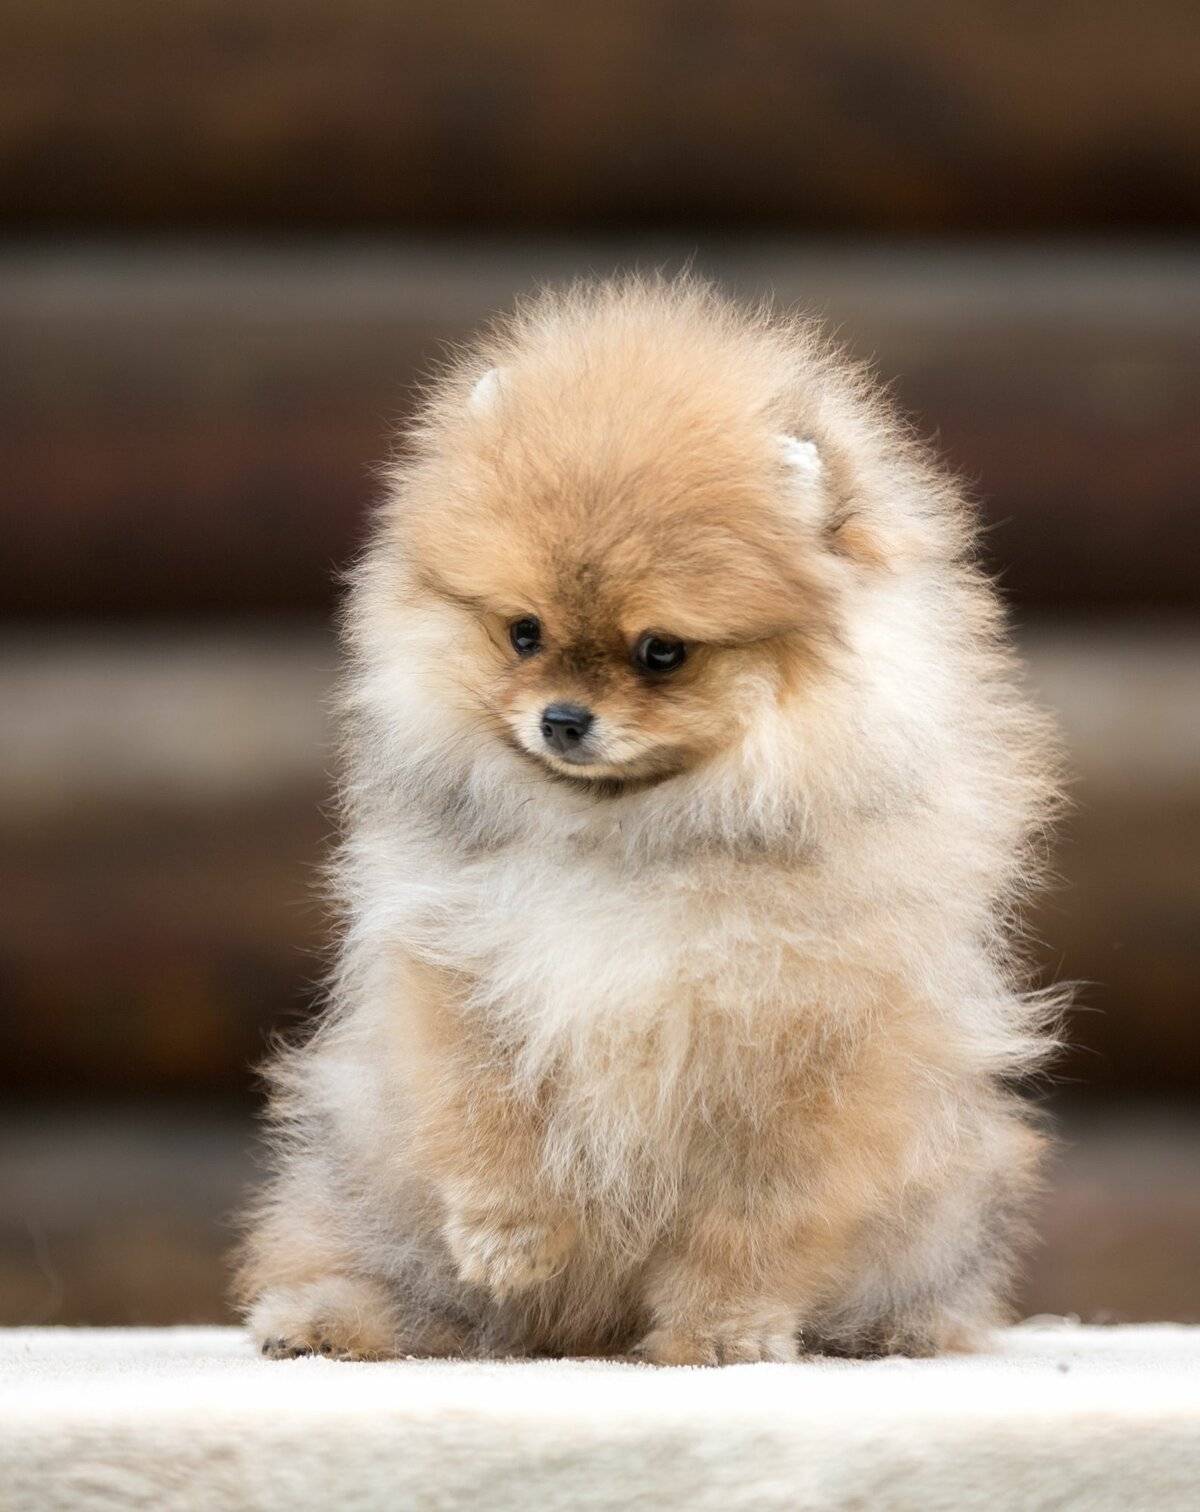 Собака туди — самая маленькая в мире: описание и цена